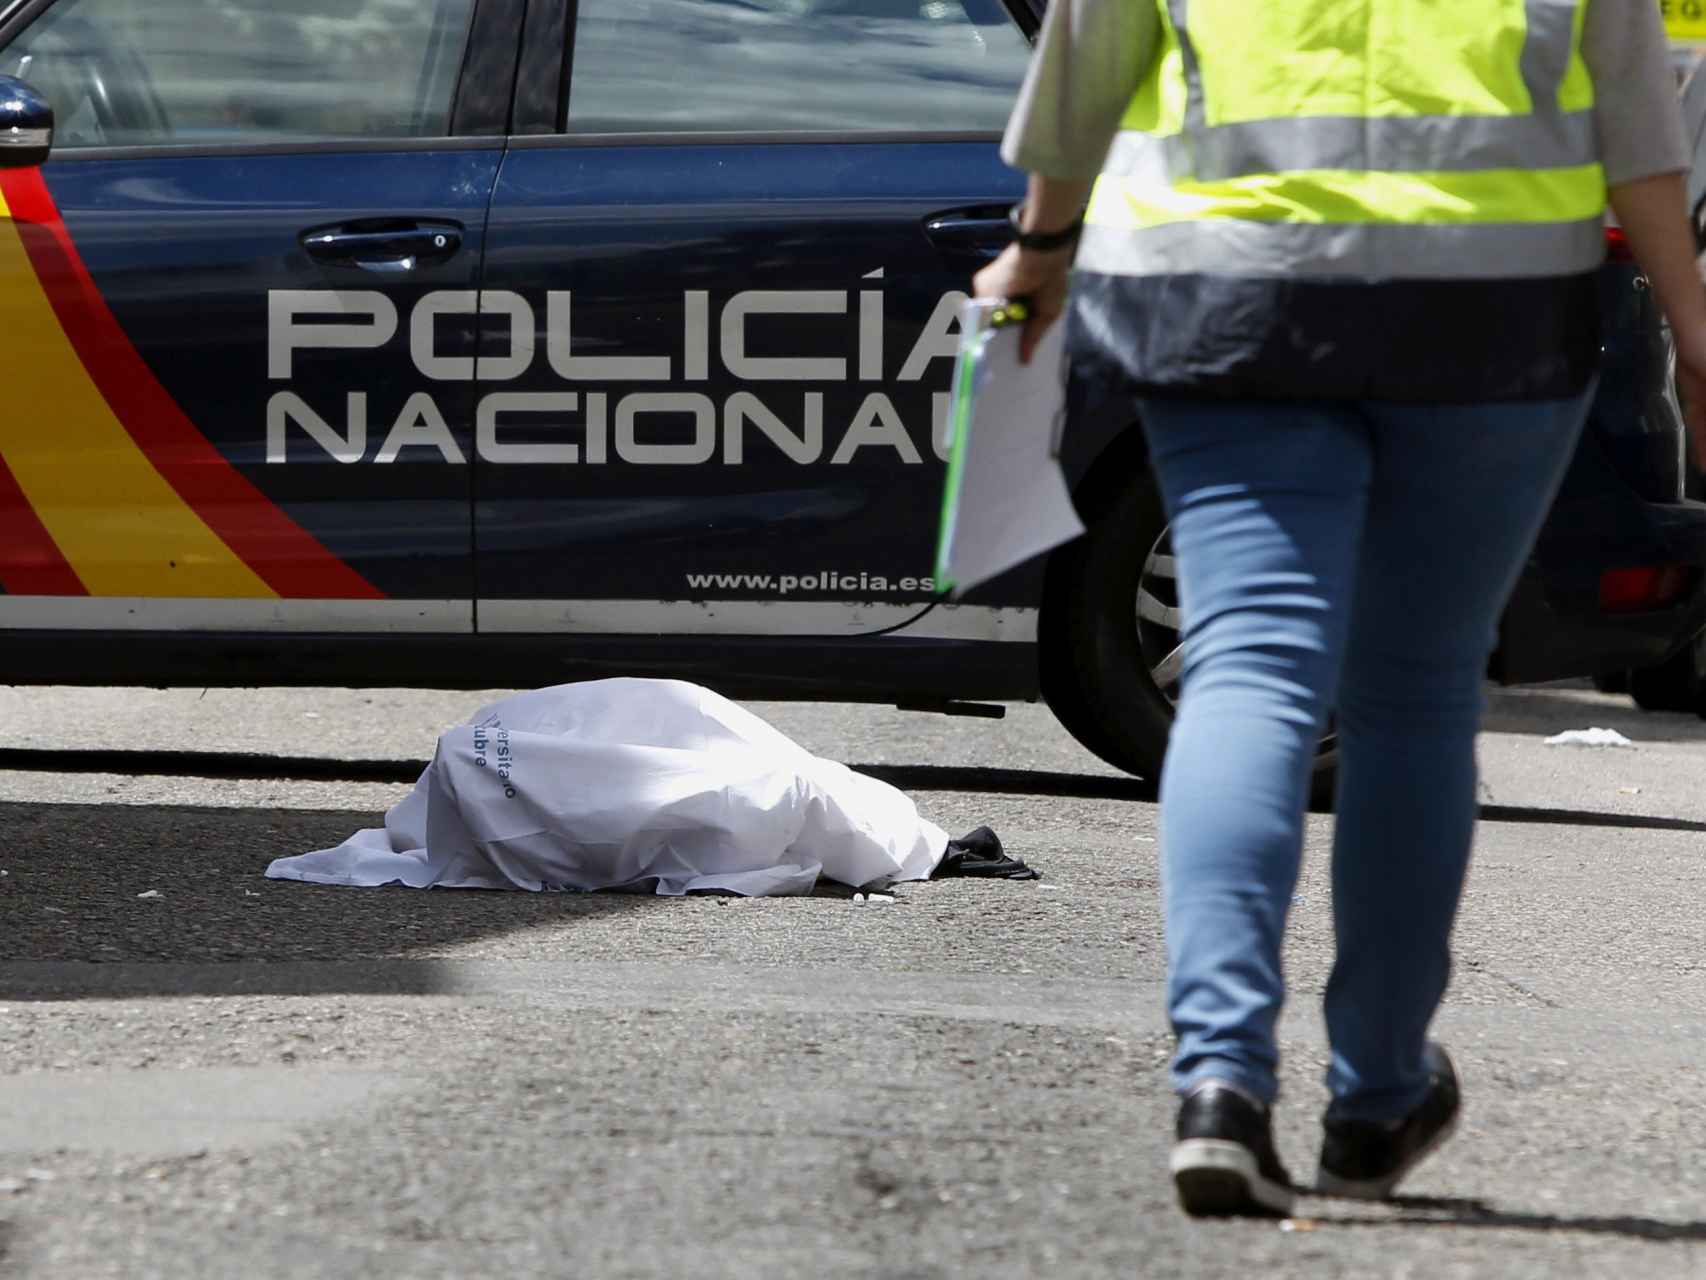 Alguien disparó al Niño Sáez en el distrito madrileño de Latina.